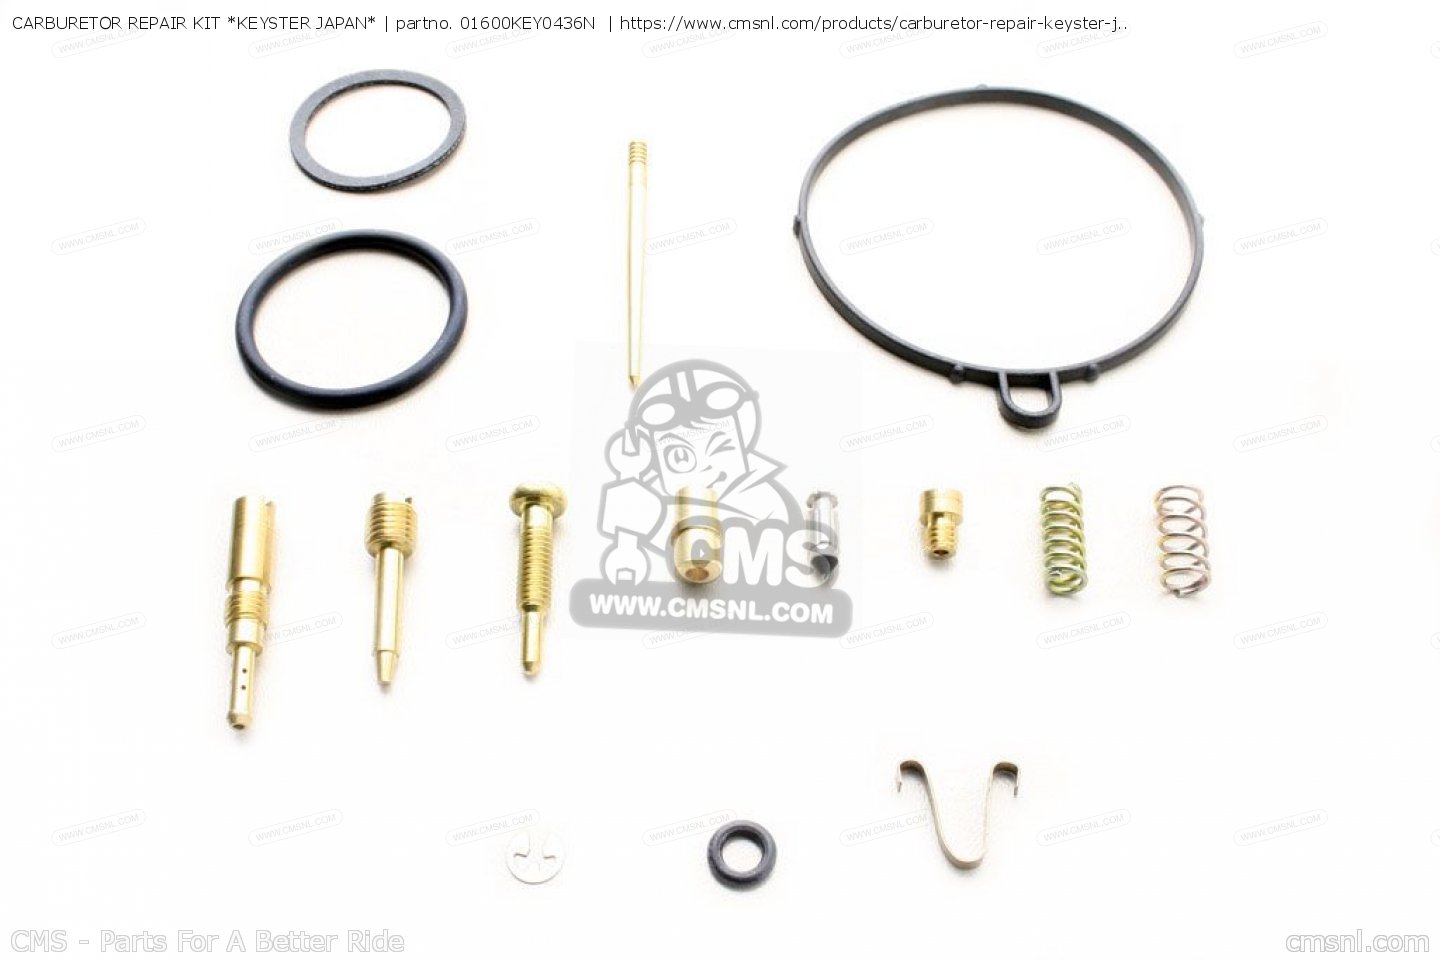 Carburetor Repair Kit Keyster Japan For Cd100ss Hero India